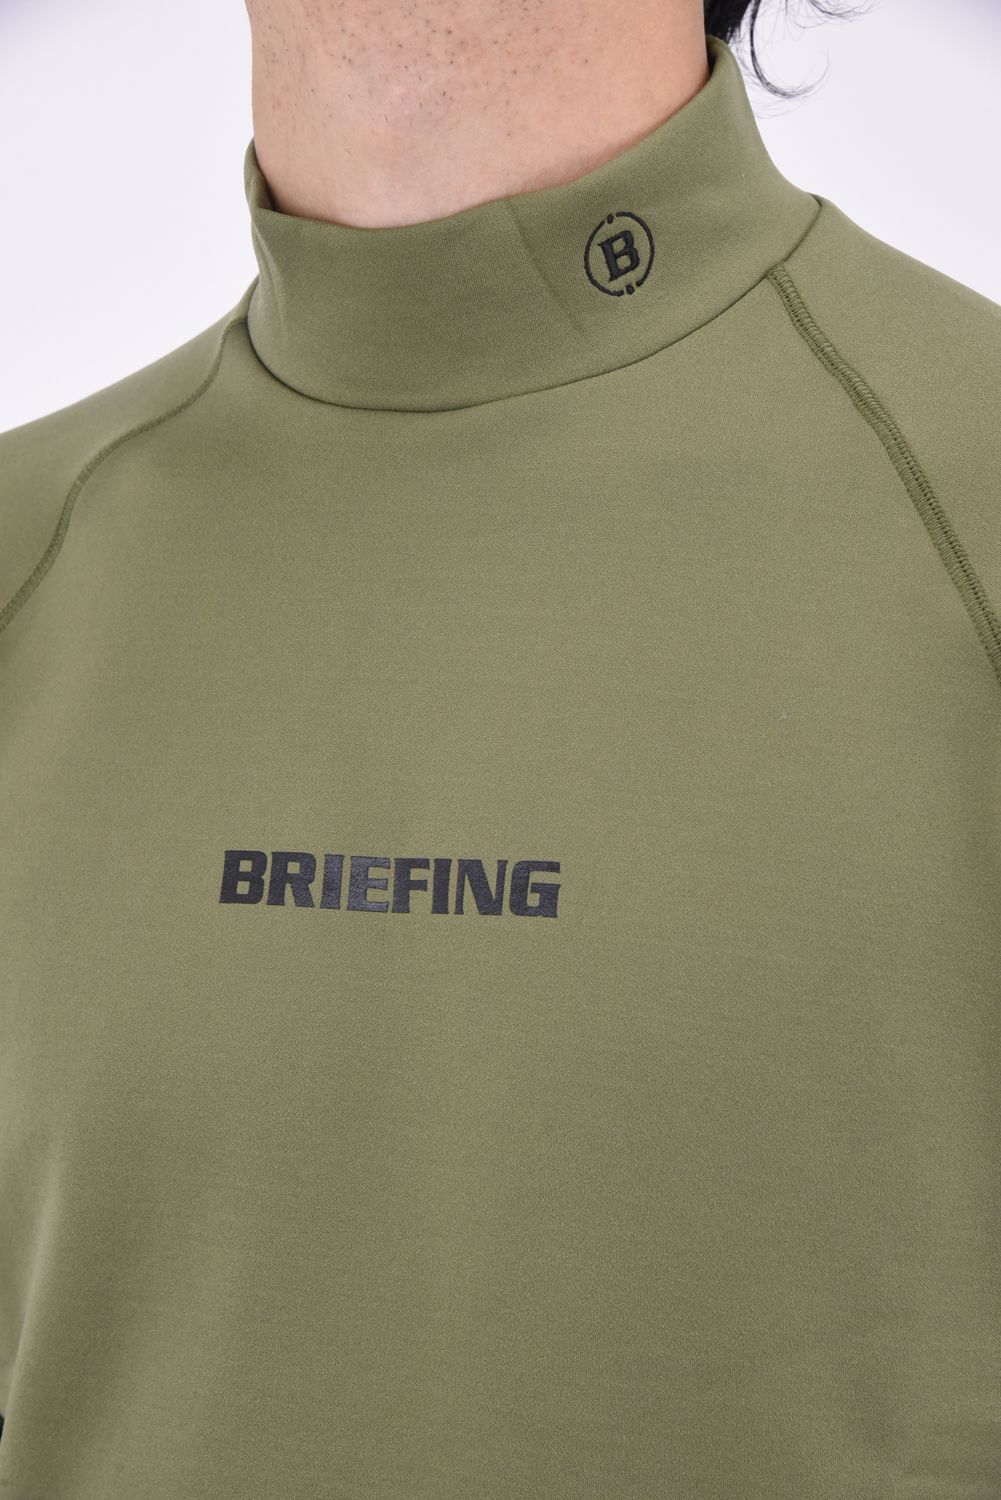 BRIEFING - 【秋冬仕様】 MENS WARM LS HIGH NECK / ブランドロゴ